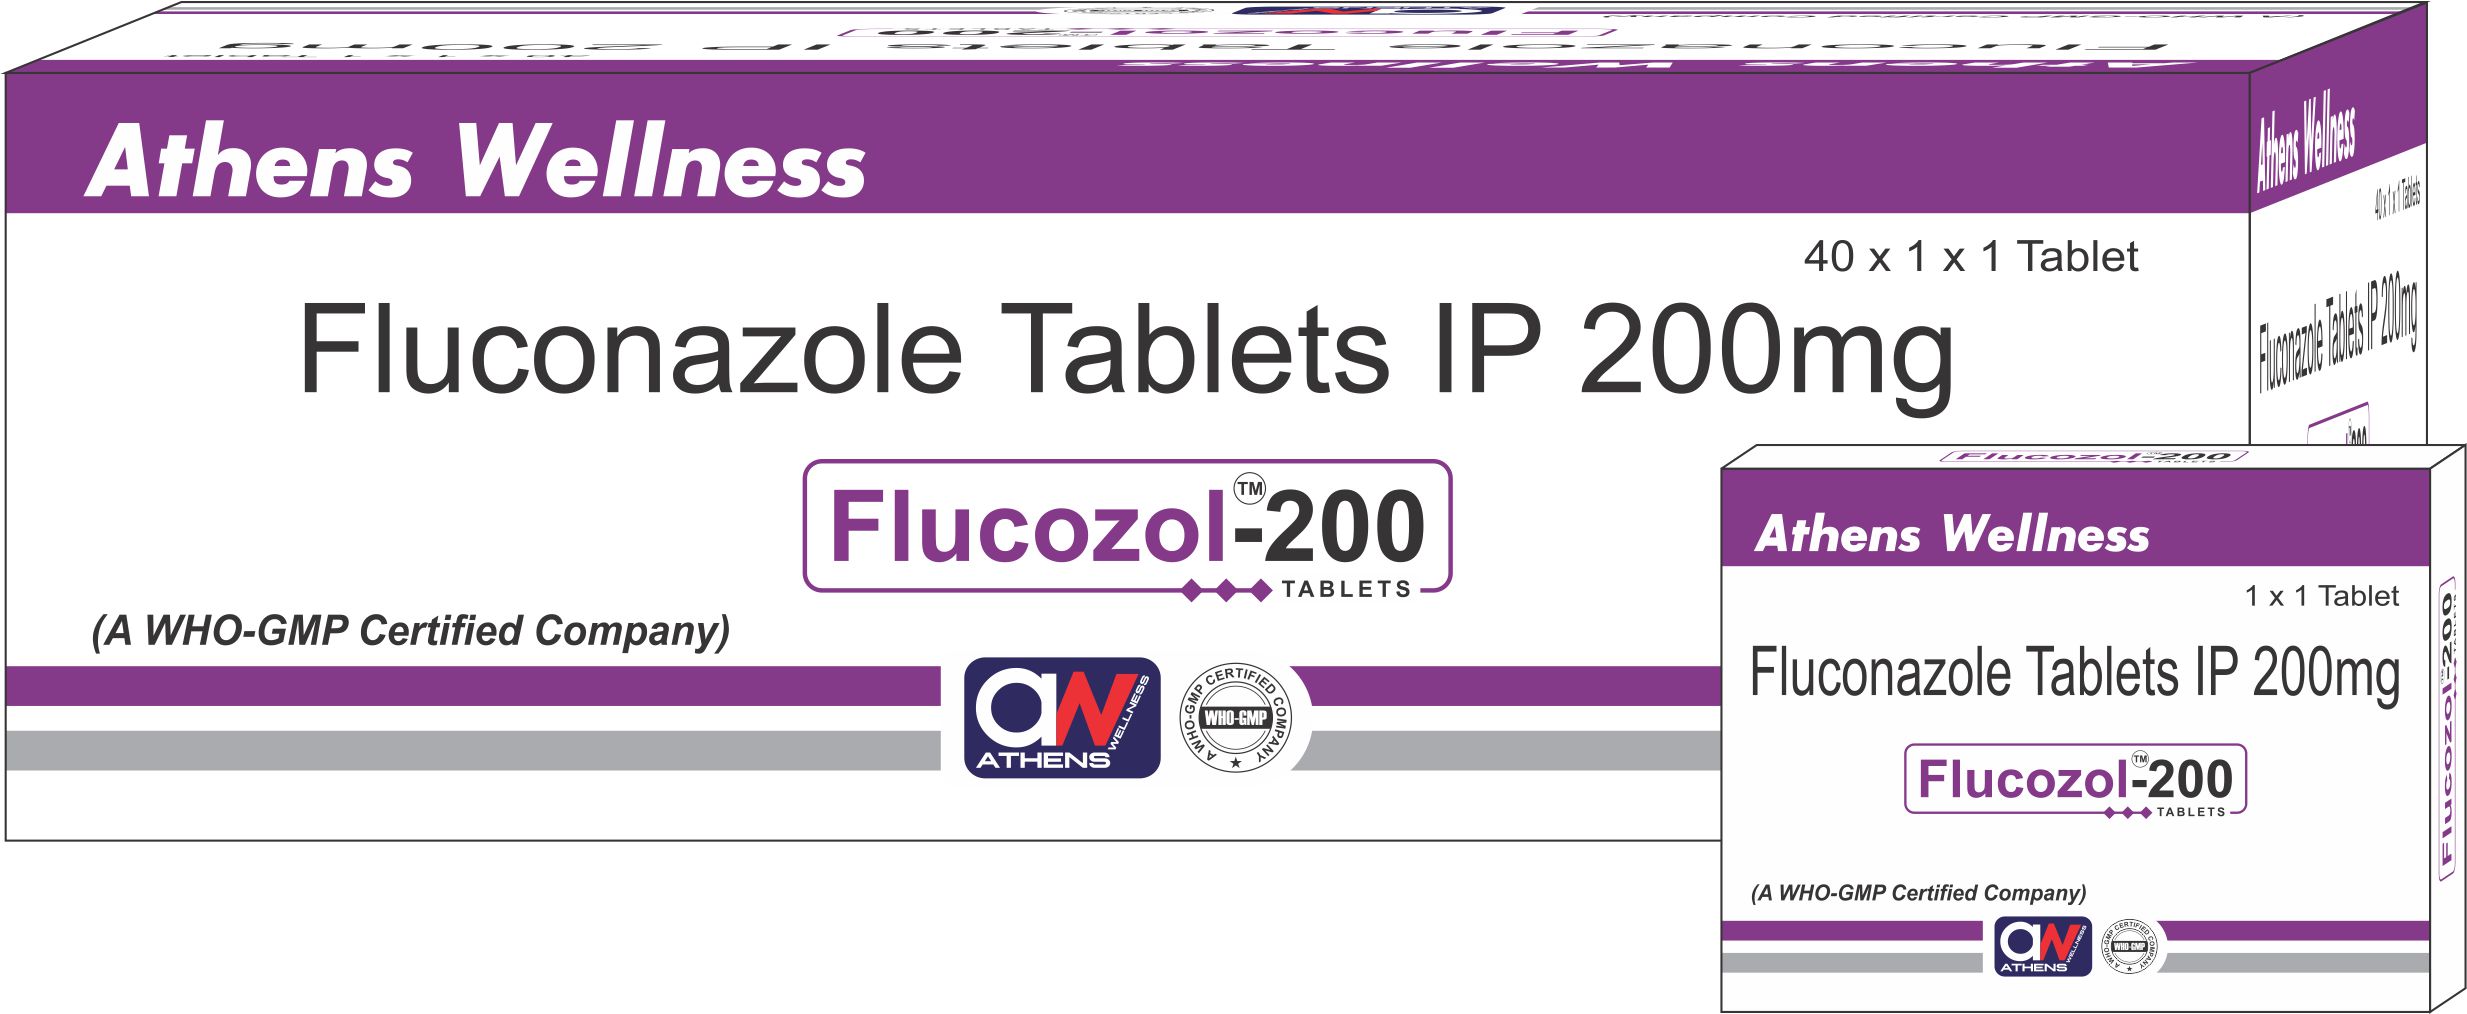 FLUCOZOL-200TABLETS